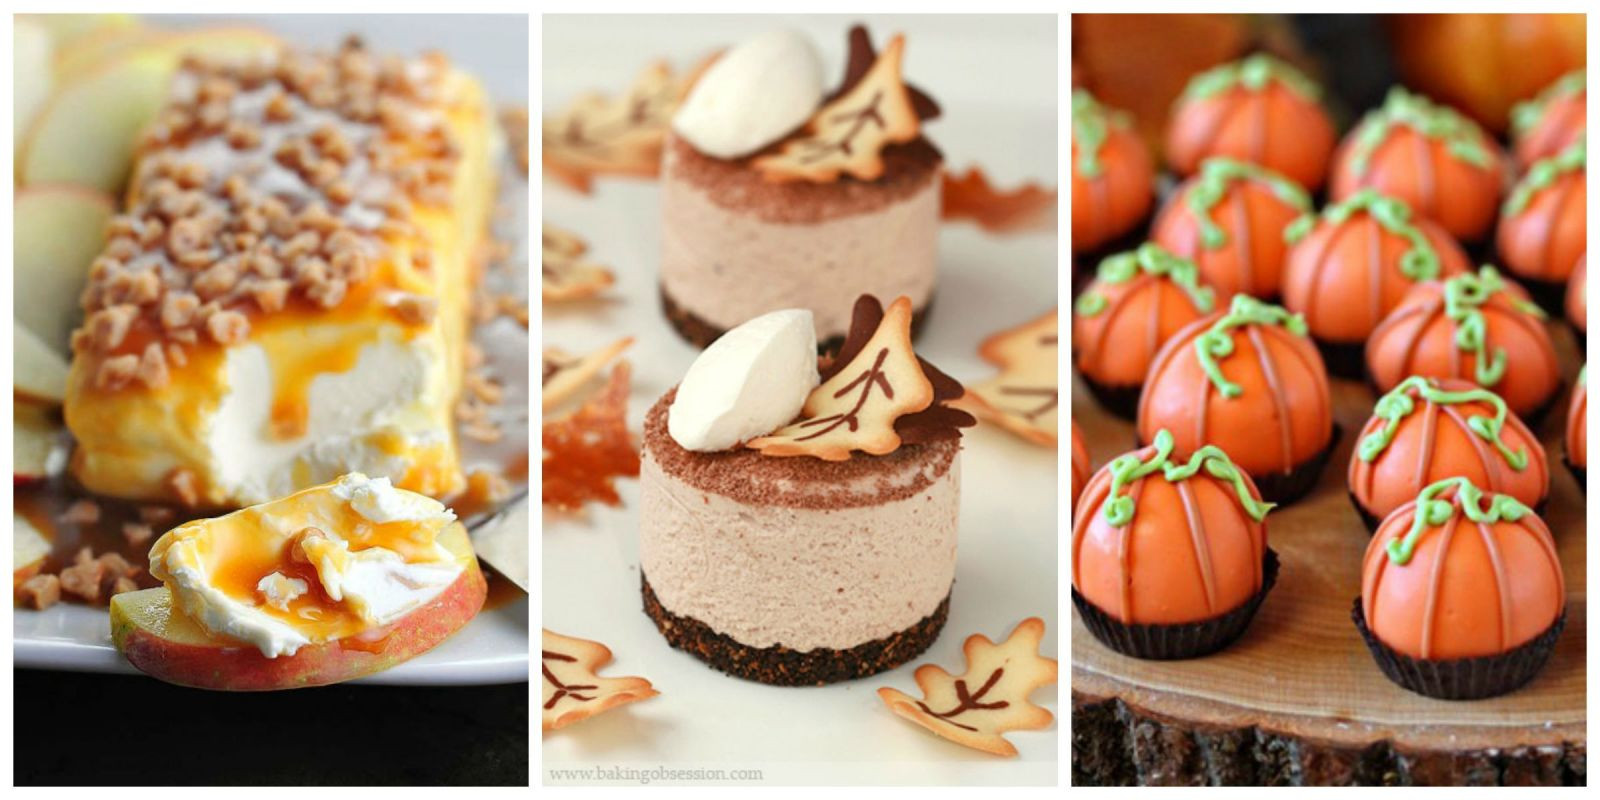 Fall Dessert Ideas
 35 Easy Fall Dessert Recipes Best Treats for Autumn Parties